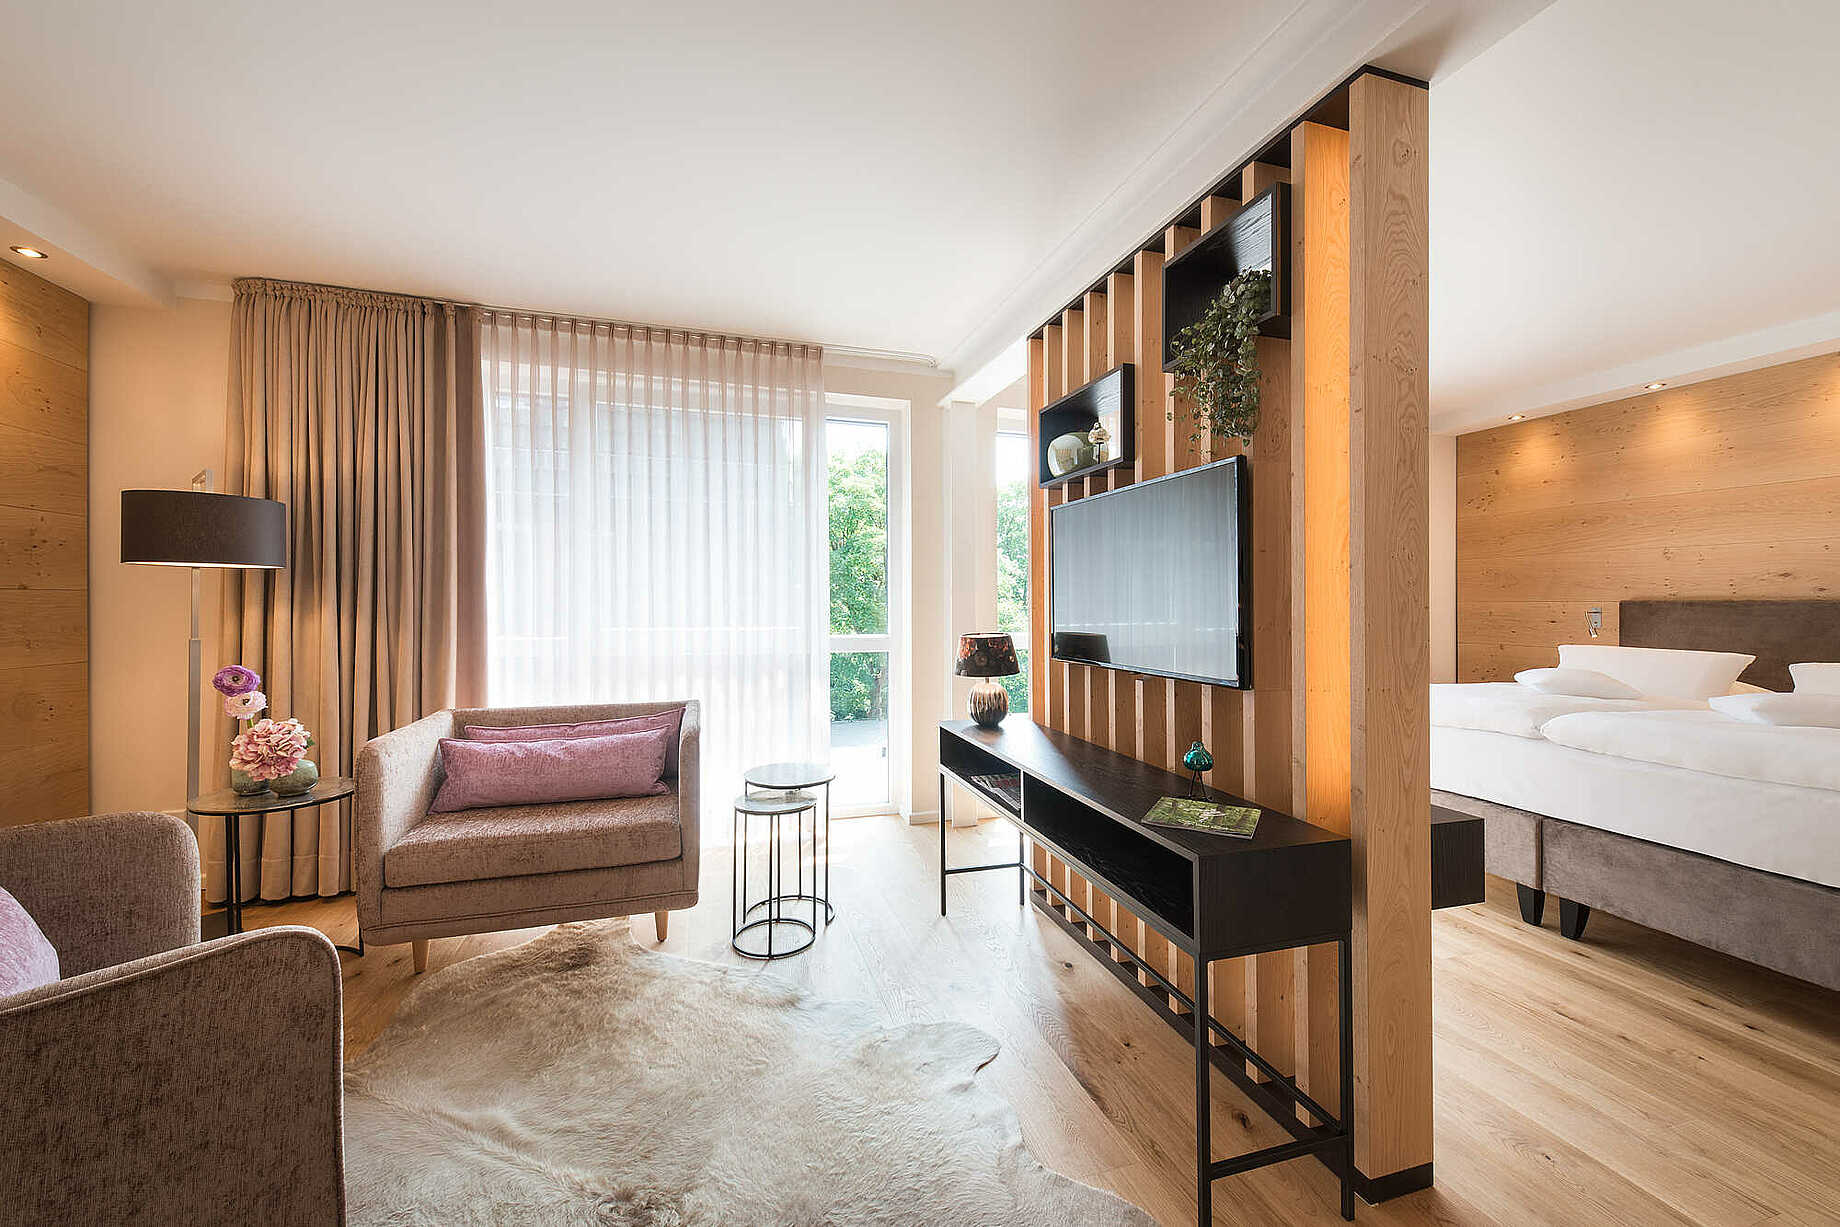 Wohnbereich mit zwei Sesseln und einem Flachbild-TV über einem Sideboard - Atmosphäre in Holz